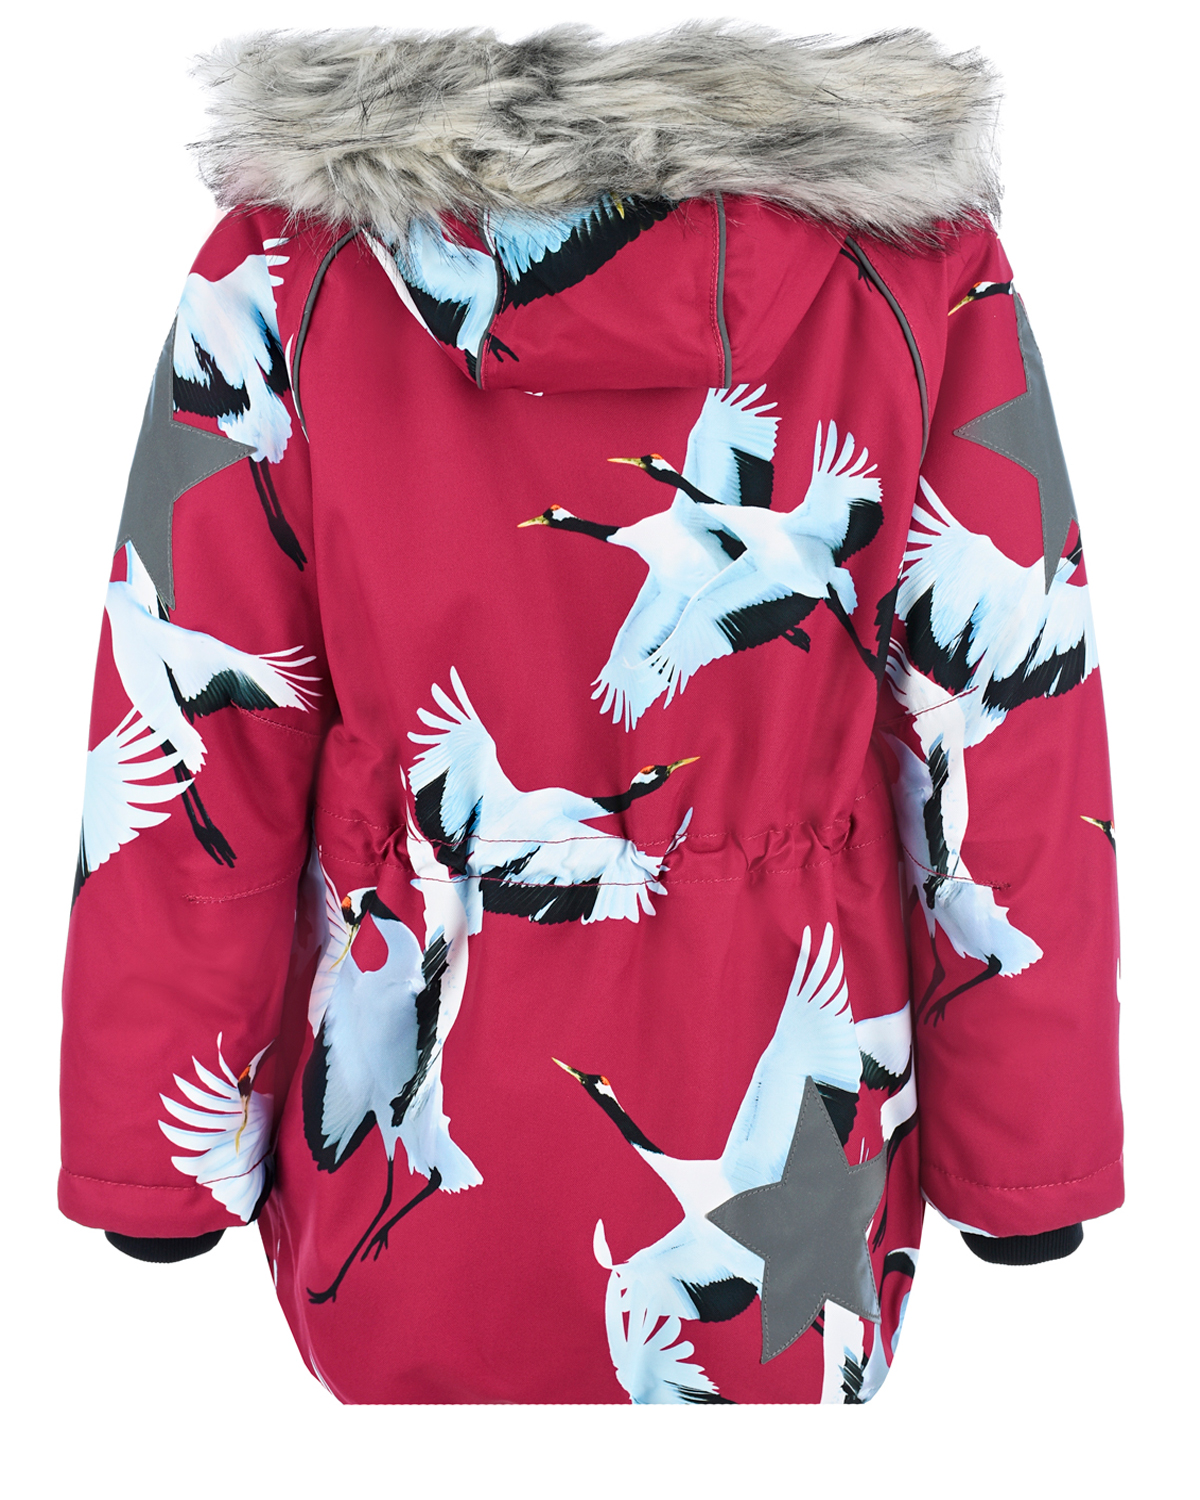 Бордовая куртка с принтом "птицы" Molo детская, размер 104, цвет бордовый - фото 2